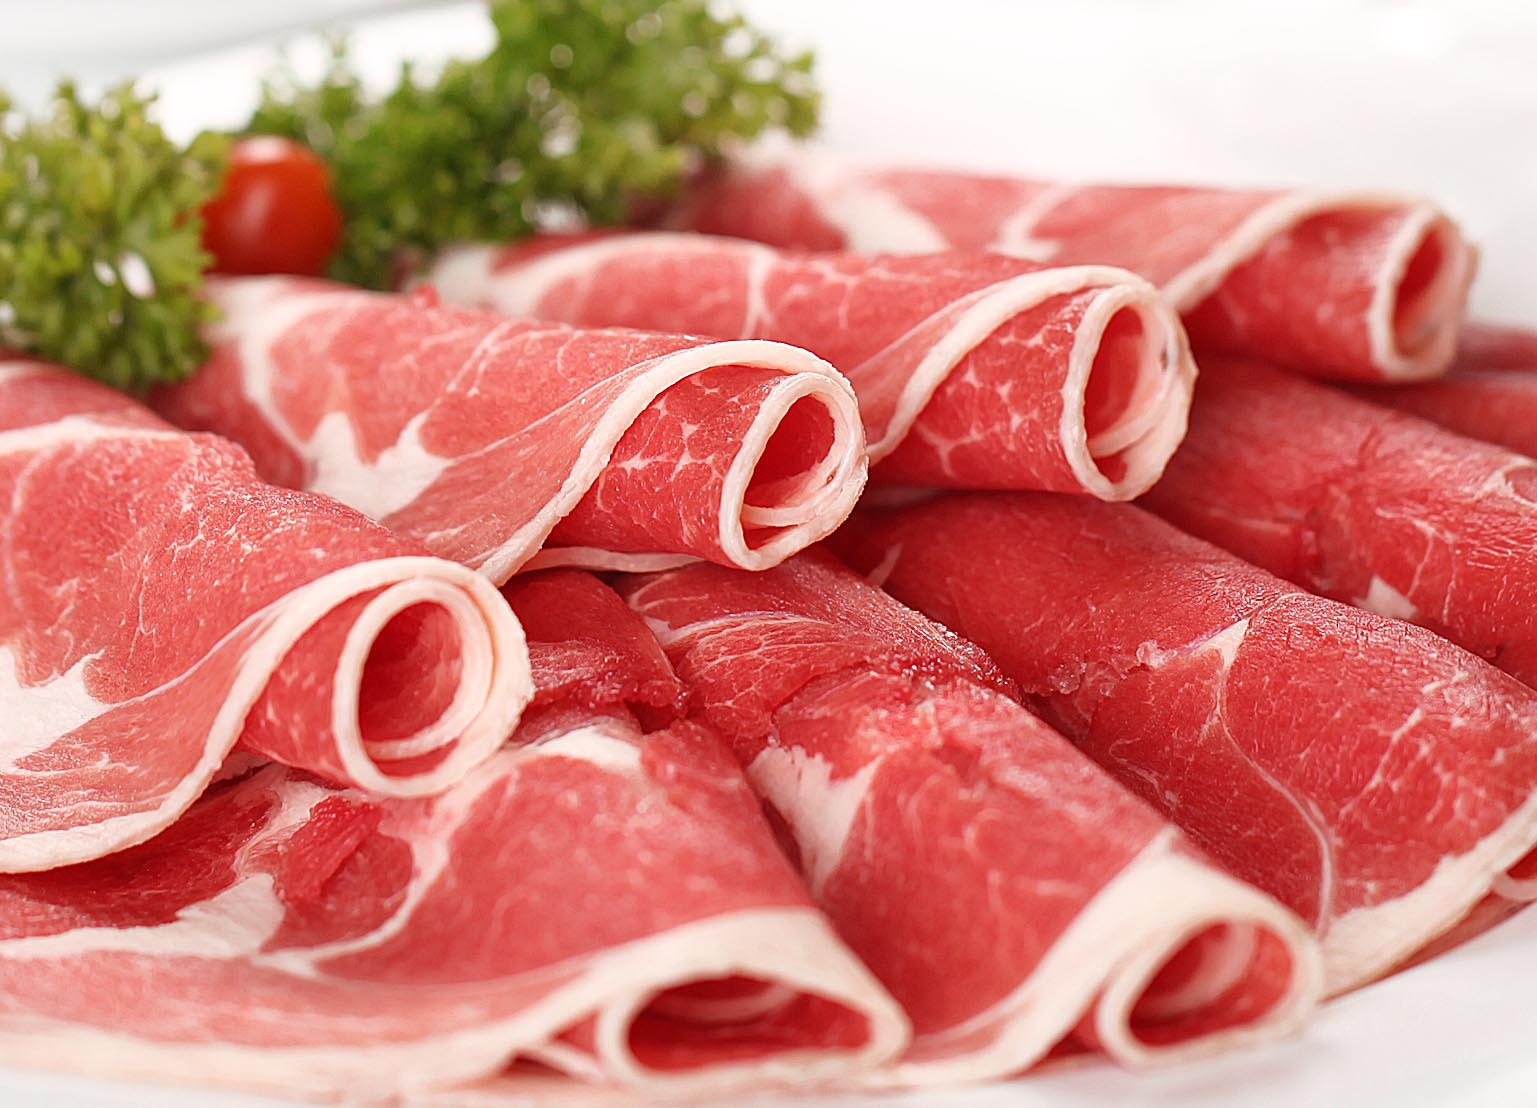 Thịt là nguồn cung cấp năng lượng và vitamin B2 dồi dào cho cơ thể